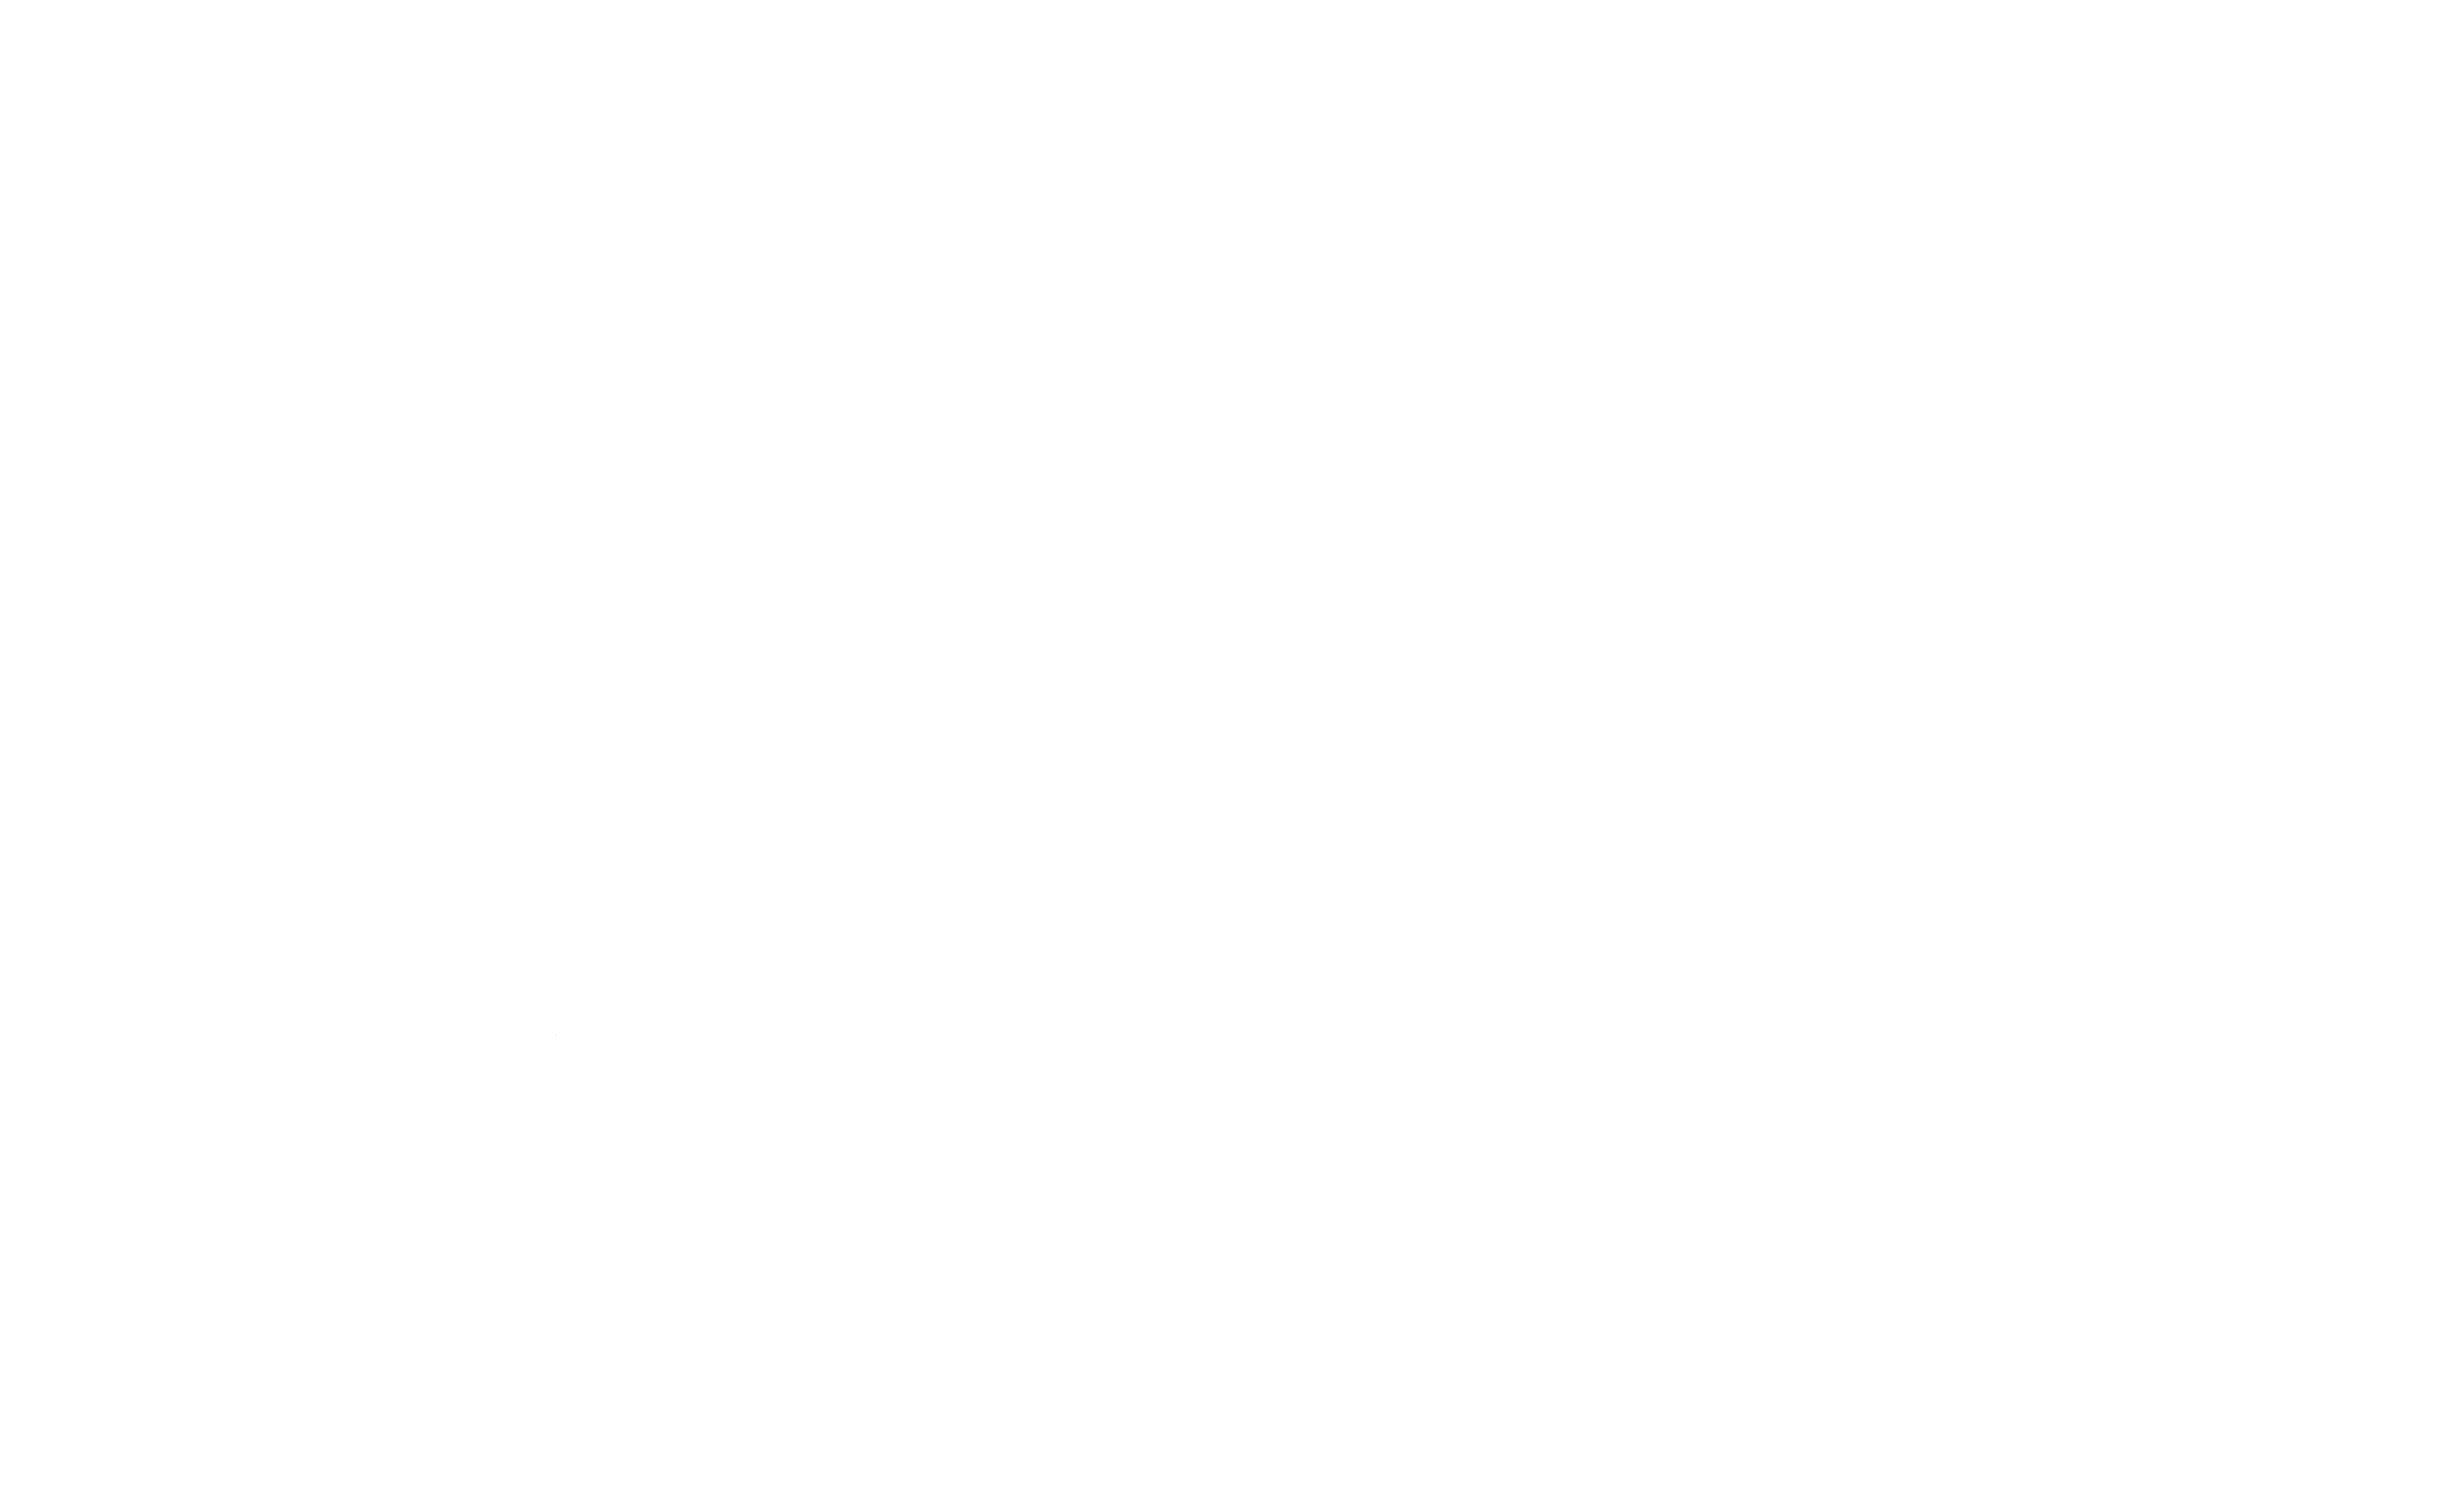 Gartic Phone - Jogo Gartic Phone